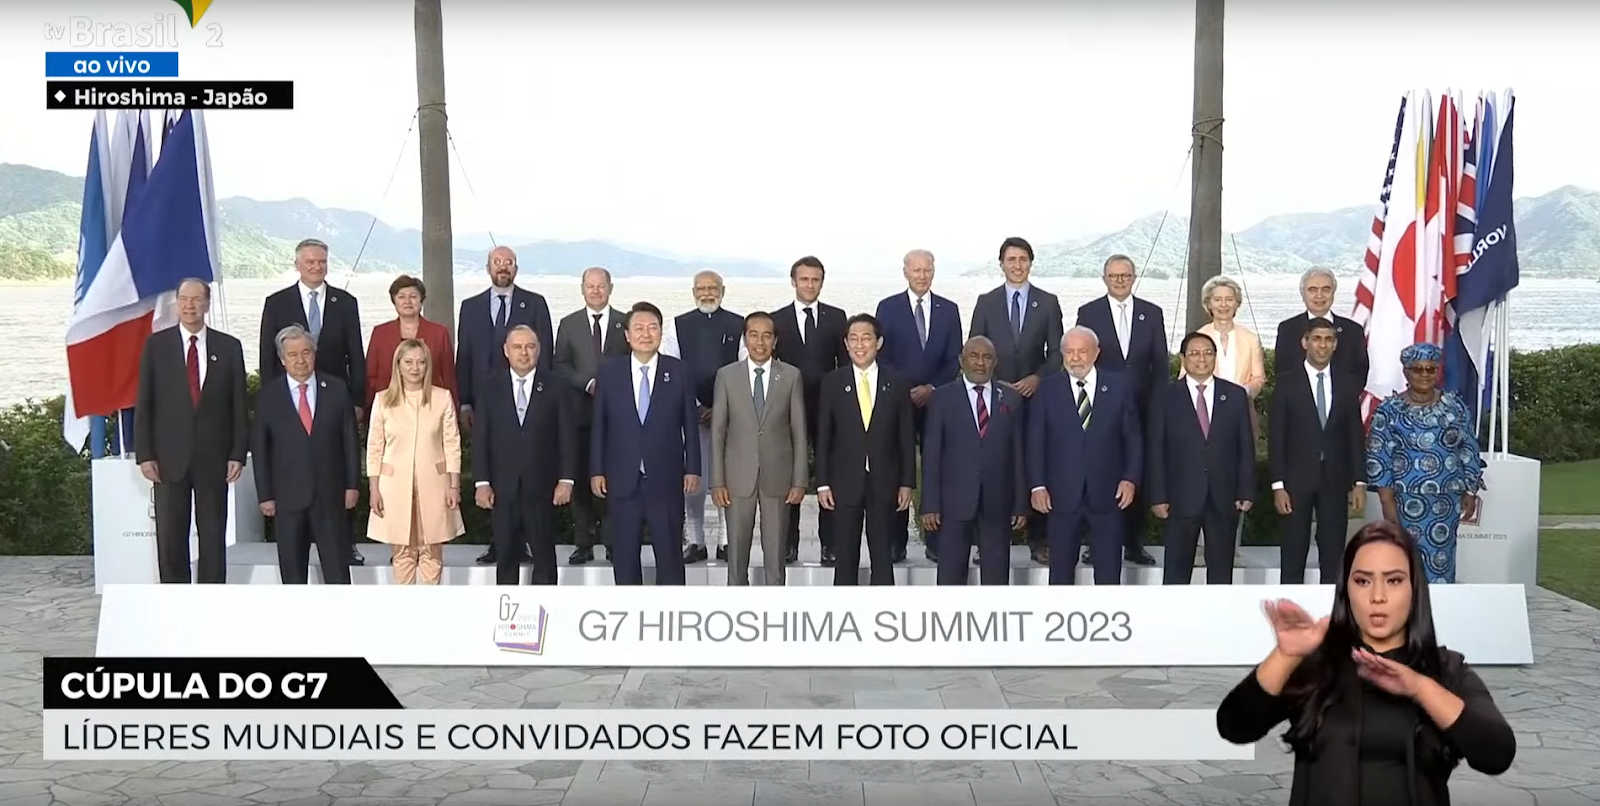 Transmissão da TV Brasil mostra líderes que compareceram à Cúpula do G7 de 2023; Lula está entre eles.